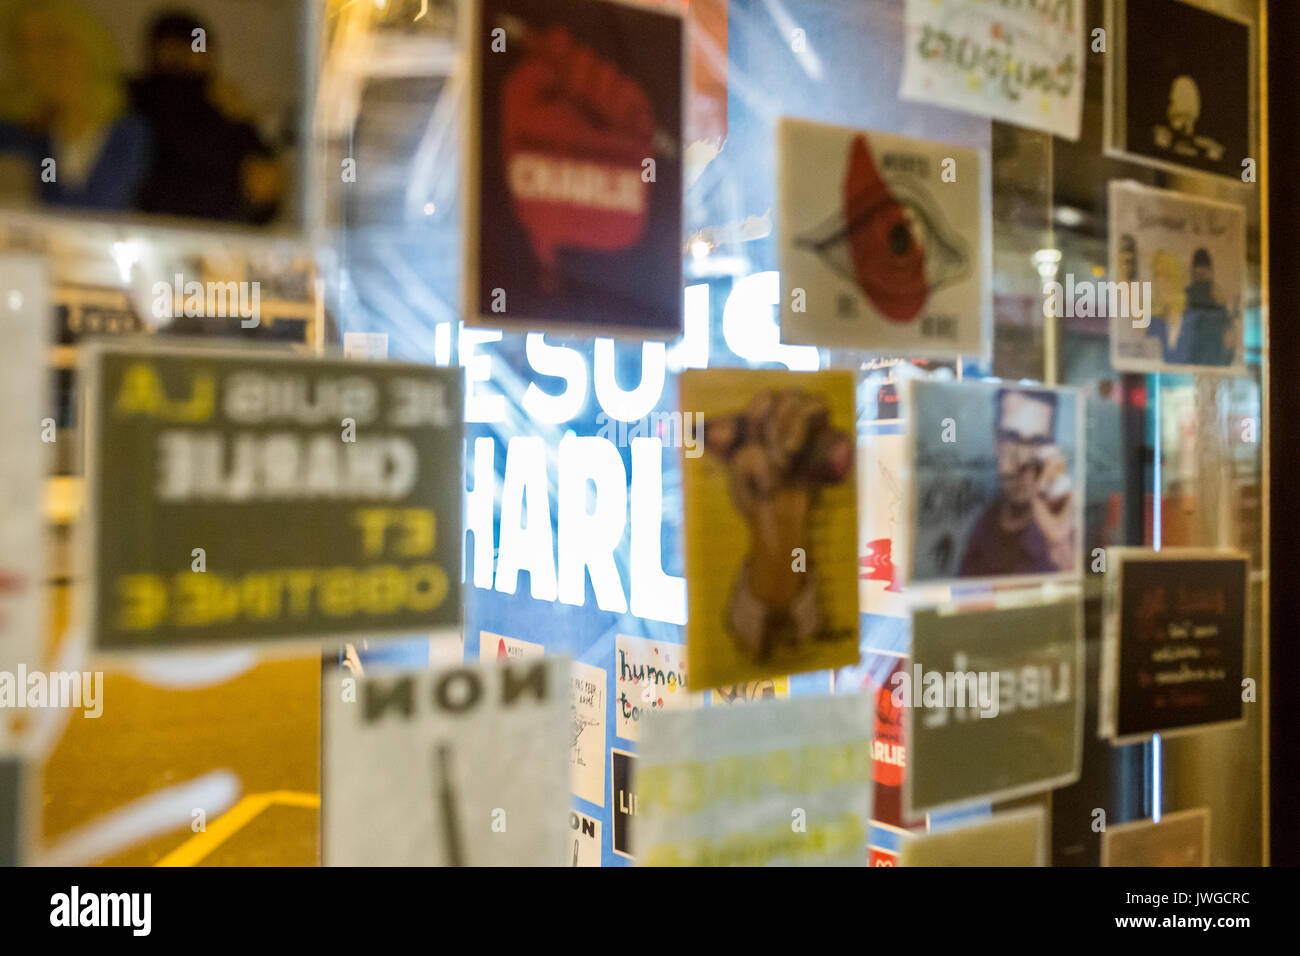 Je suis Charlie auf einer Anschlagtafel eine Bushaltestelle durch Transparenz. Hommage an die Opfer von Charlie Hebdo Tötung in Paris der 7. Januar 2015. Stockfoto